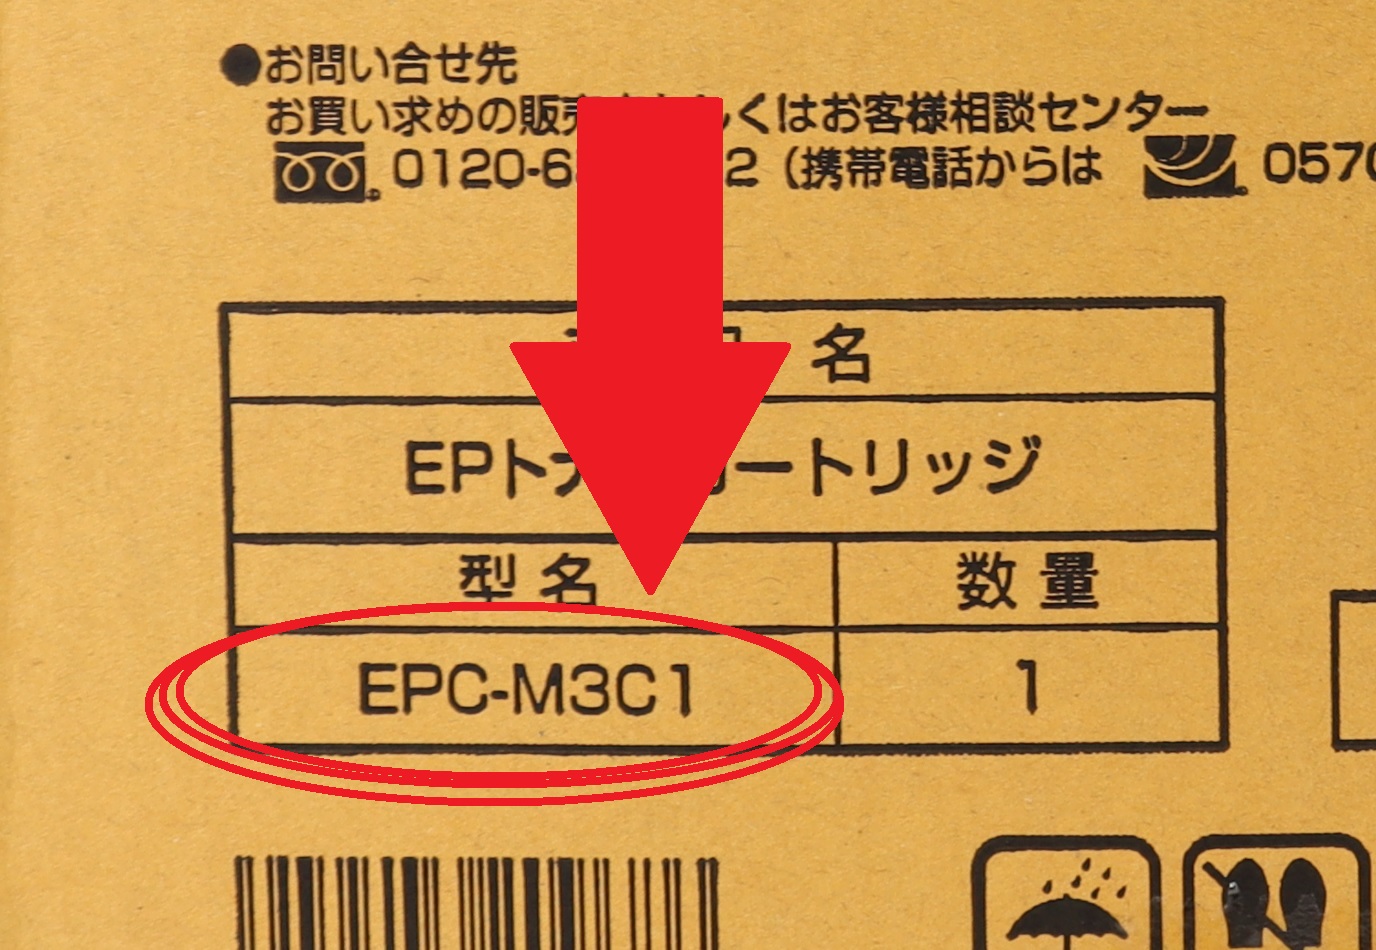 OKI EPトナーカートリッジ EPC-M3C1 型番